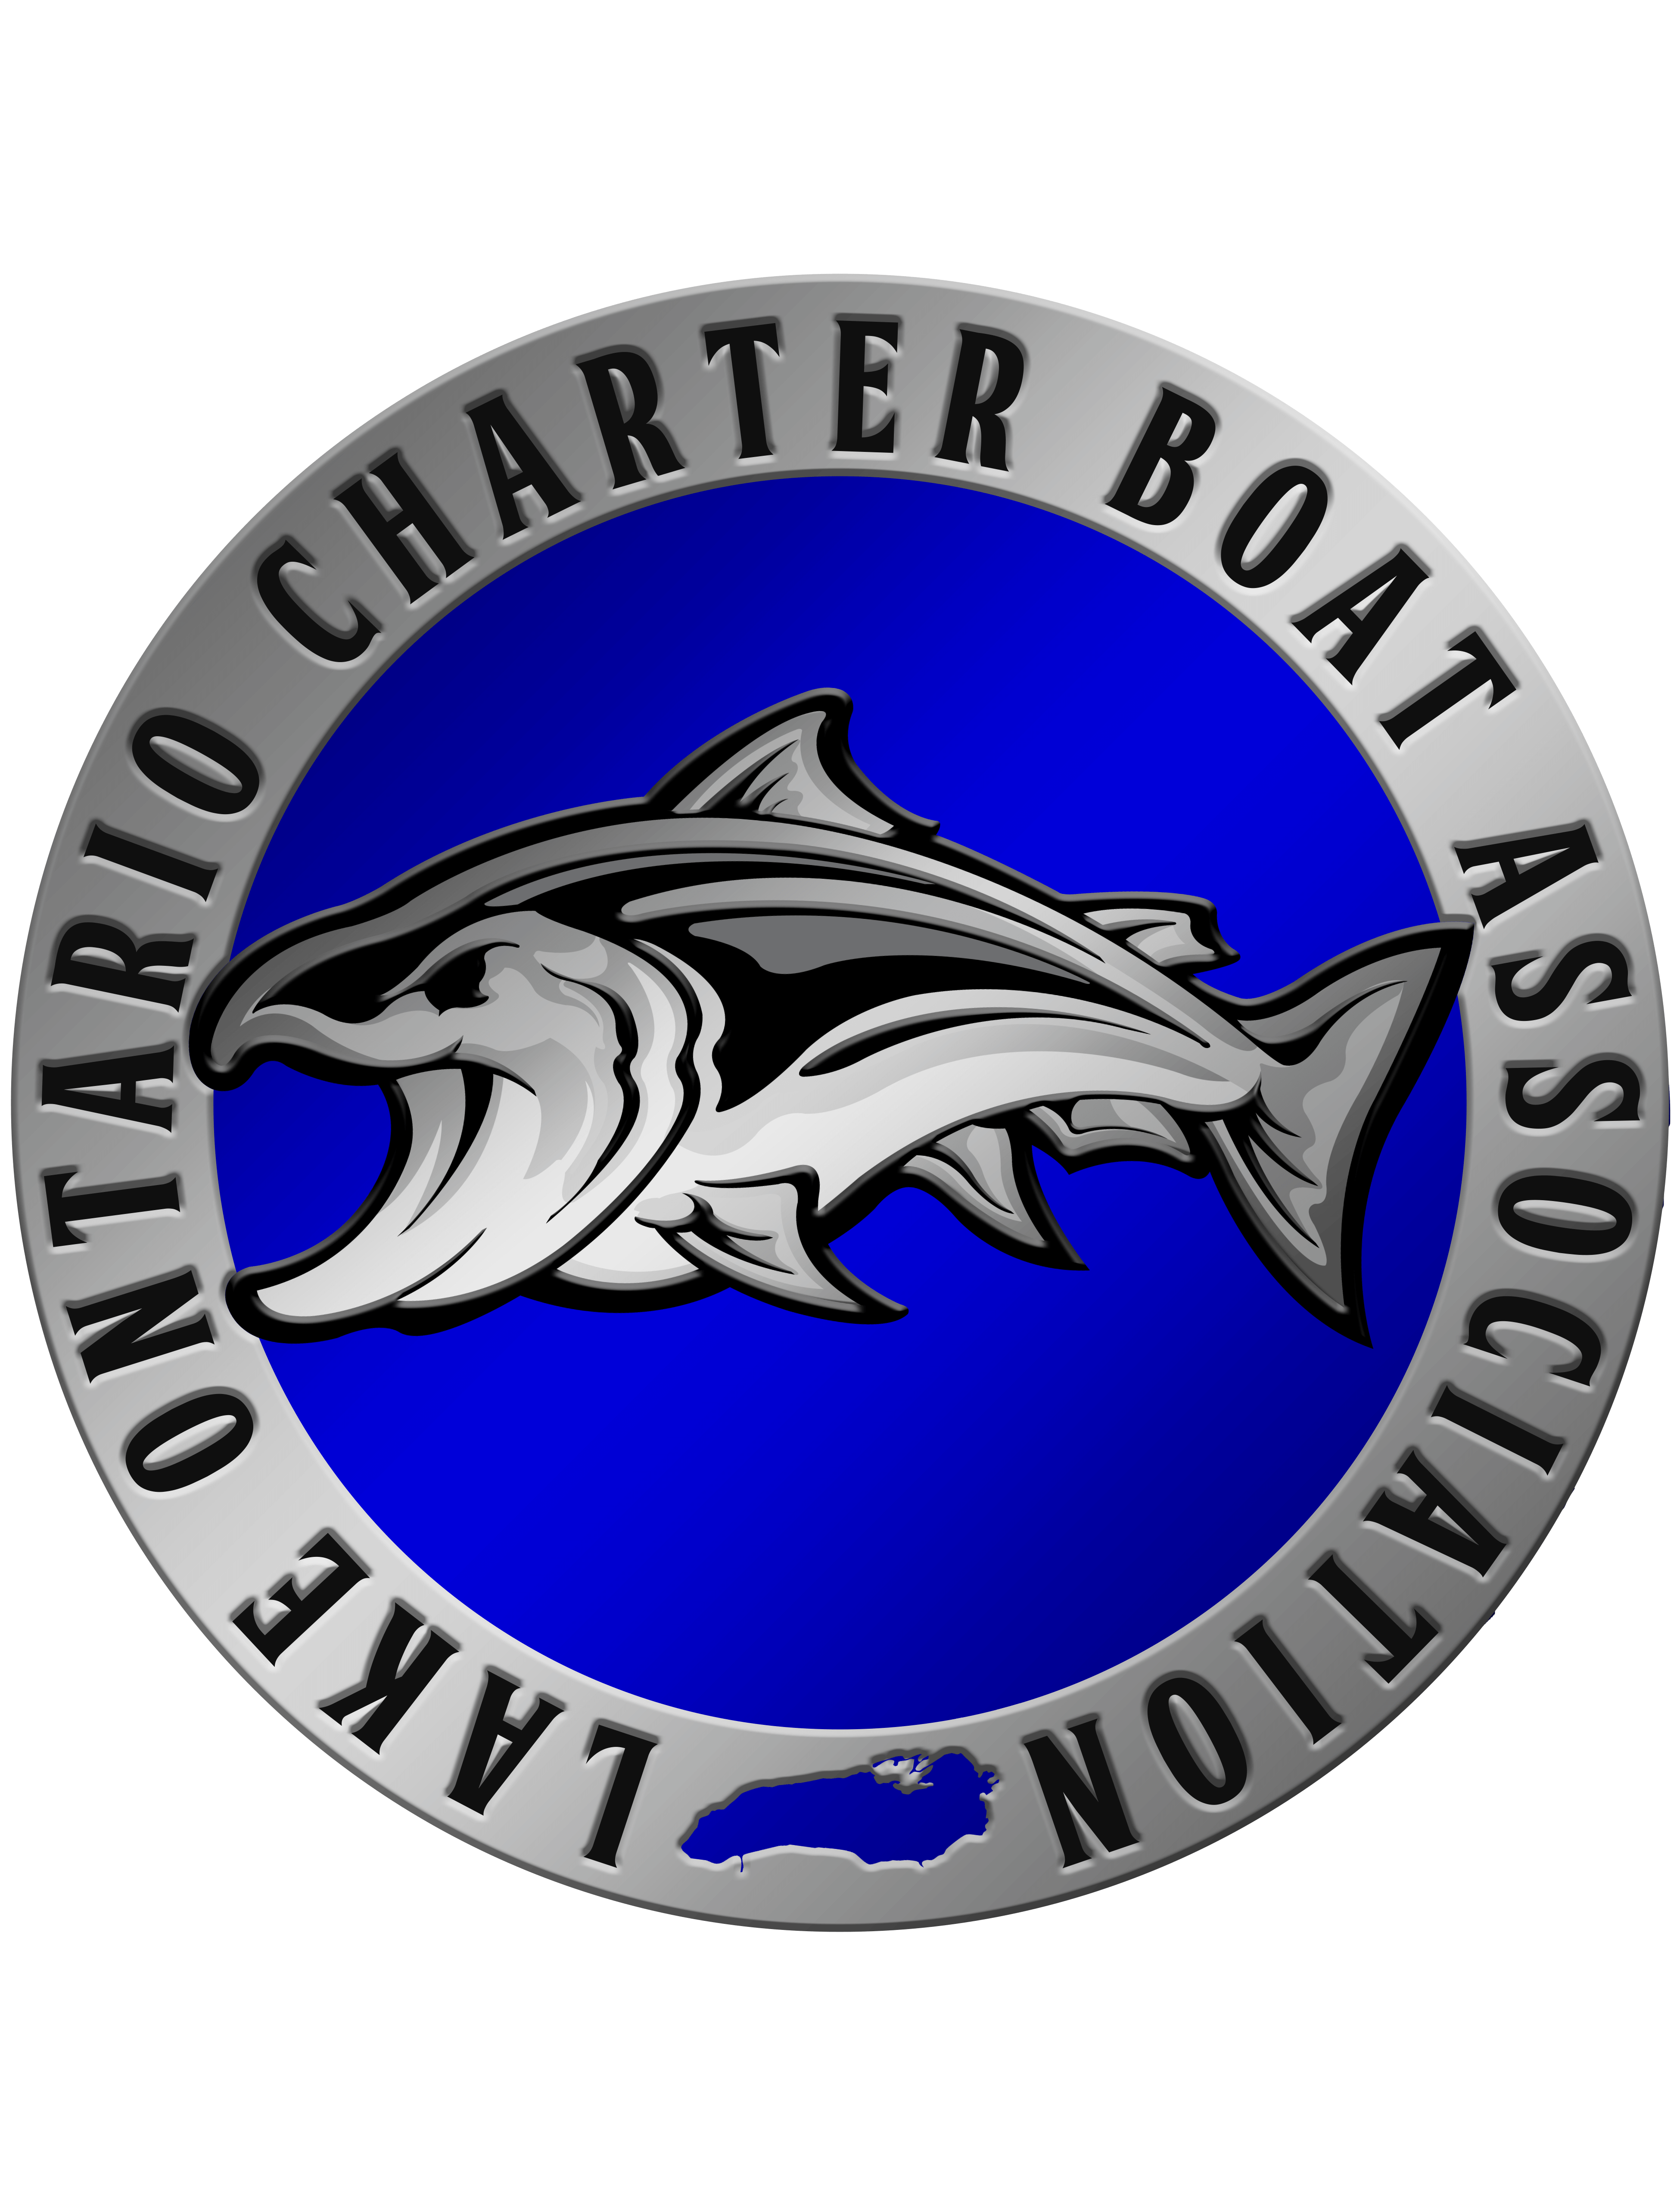 Lake Ontario Charter Boat Association (LOCBA)